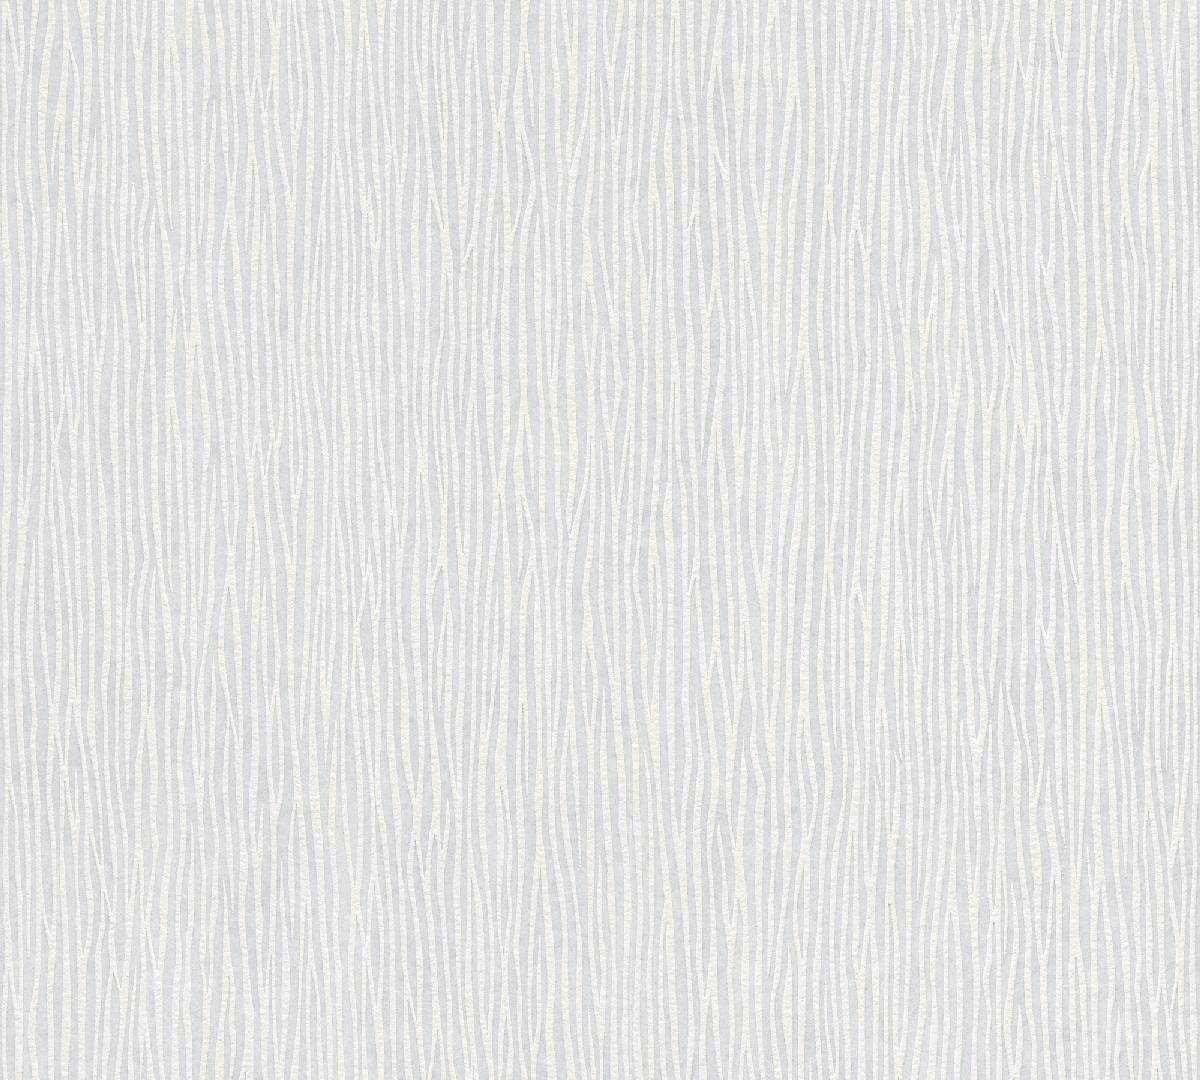 Vliestapete Meistervlies Create 243911 - einfarbige Tapete Muster - Weiß, 